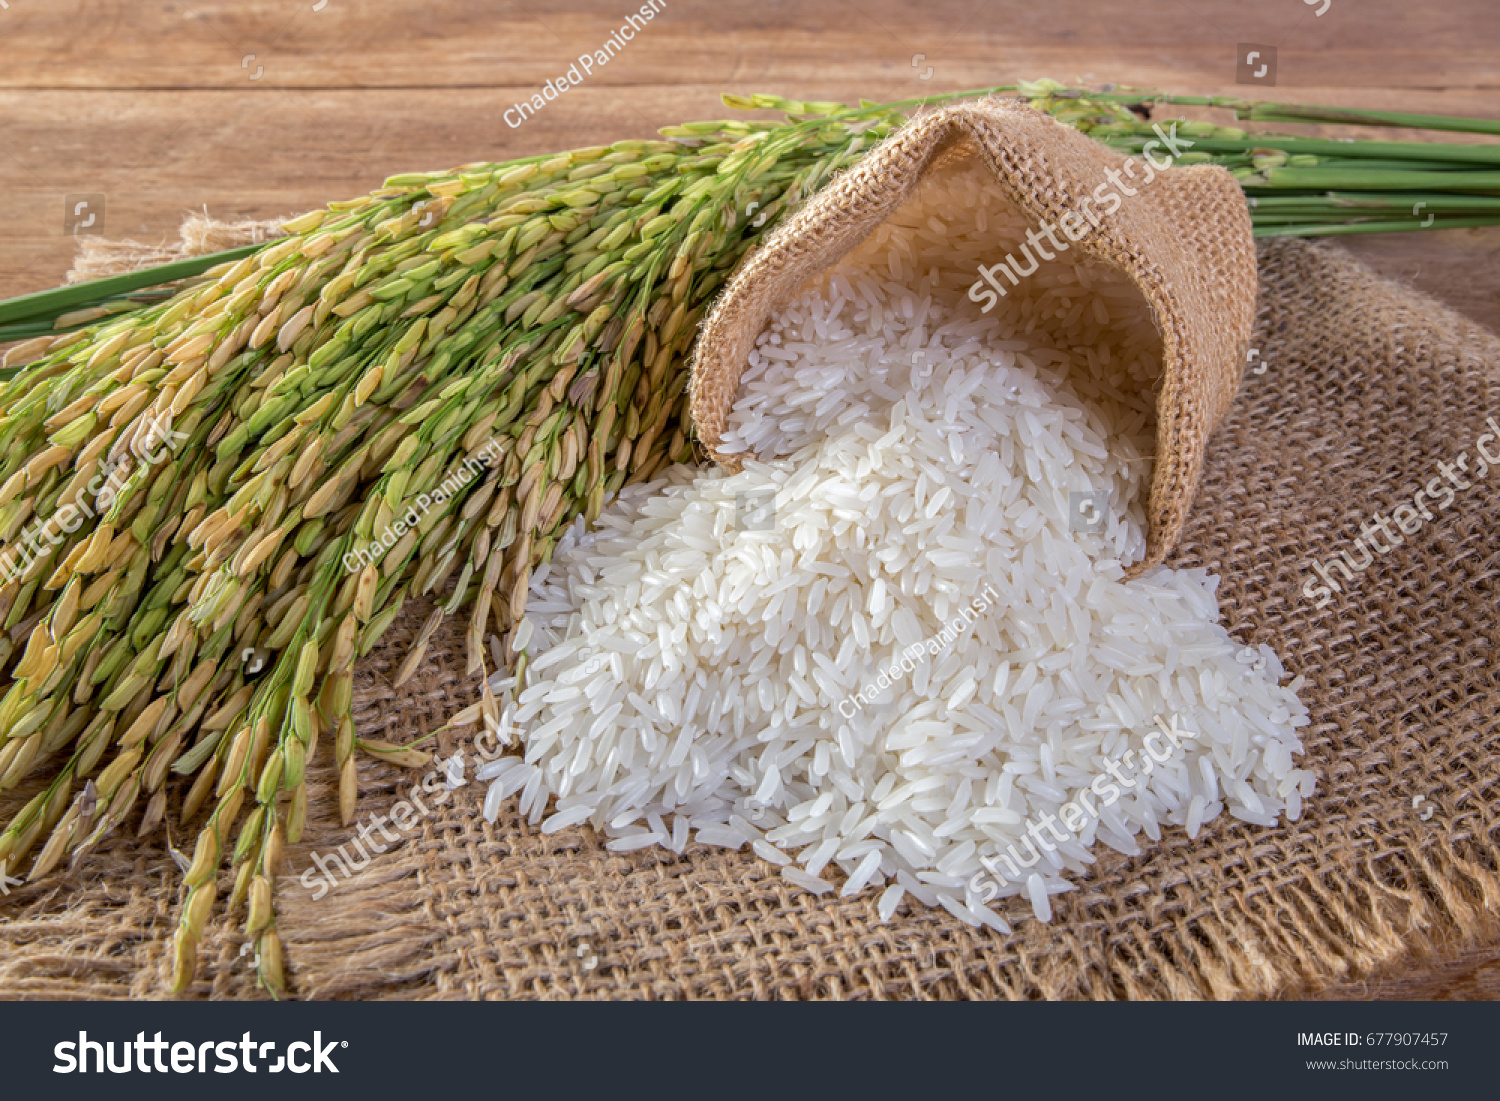 White rice (Jasmine rice) #677907457